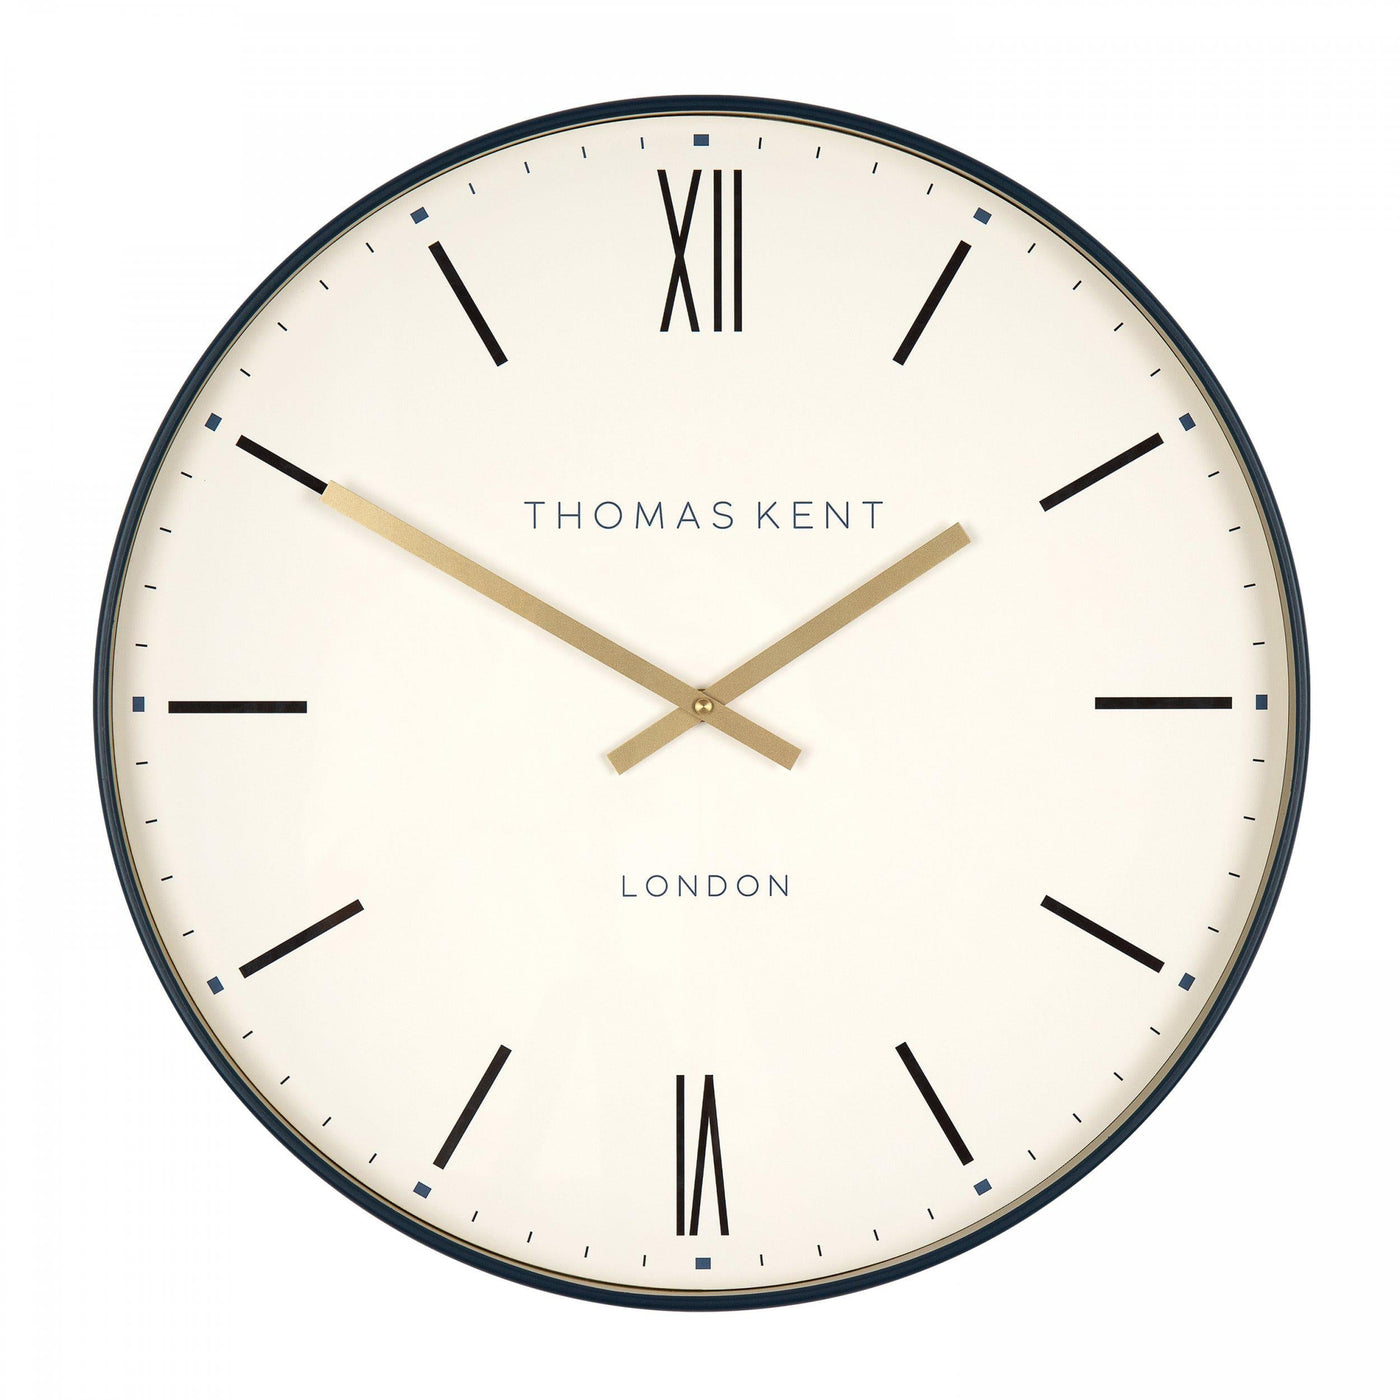 Thomas Kent London. Arlington Wall Clock - timeframedclocks